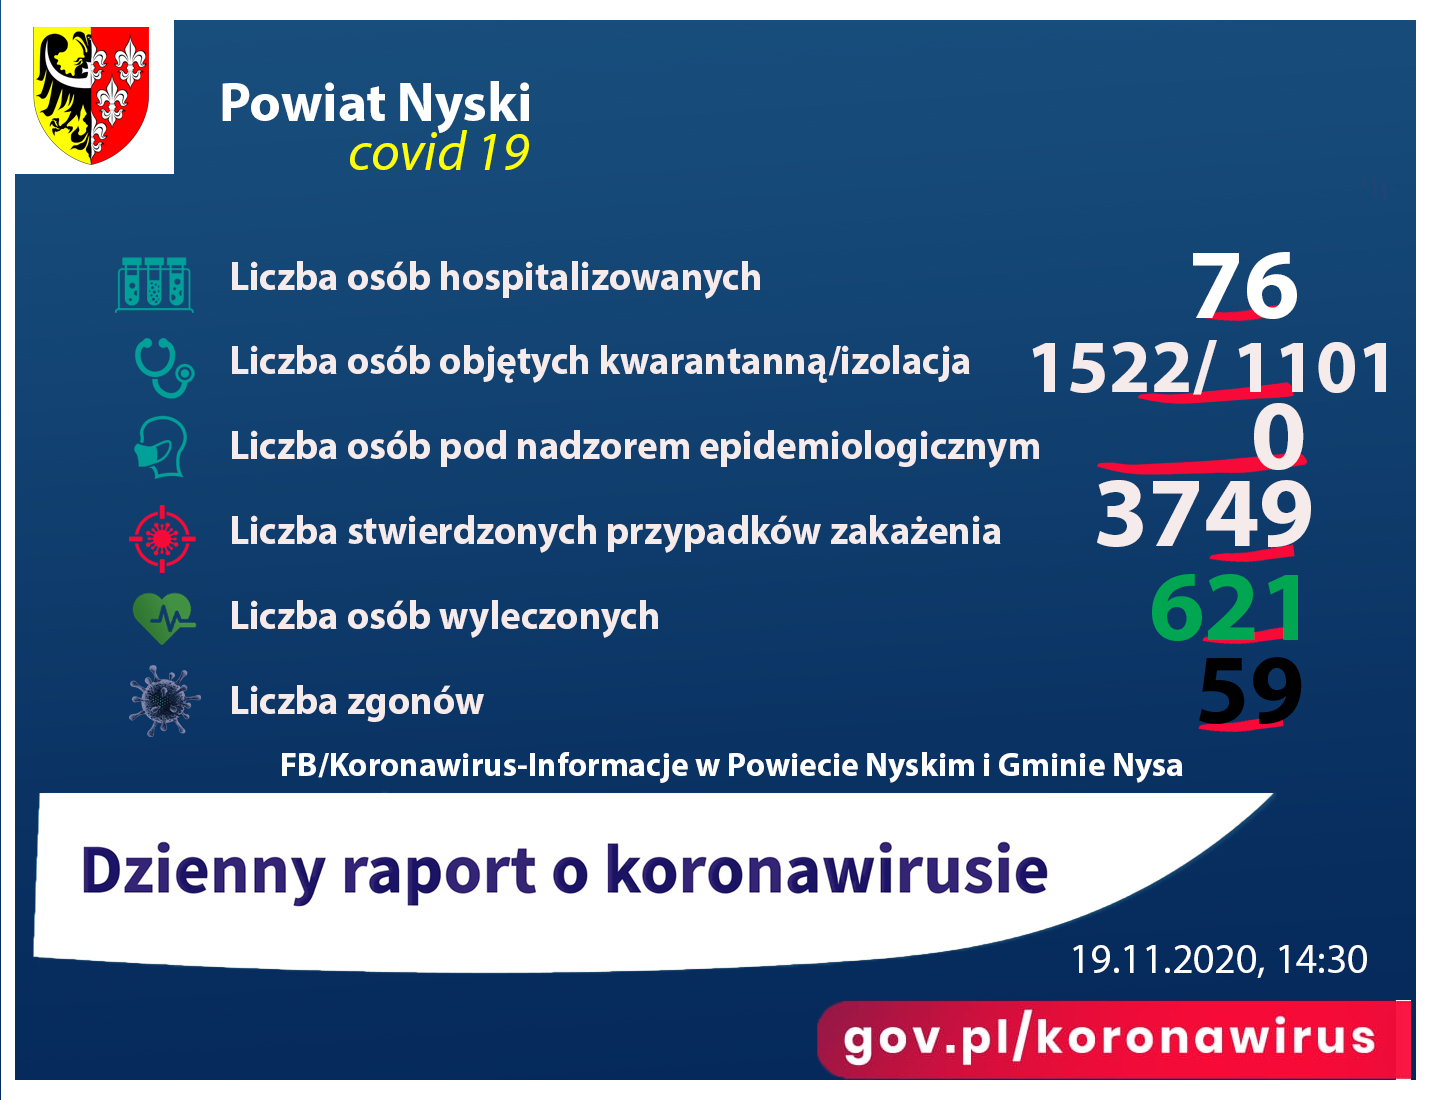 Liczba osób zakażonych 3749, hospitalizowanych - 76, ozdrowieńców - 621, zgonów 59